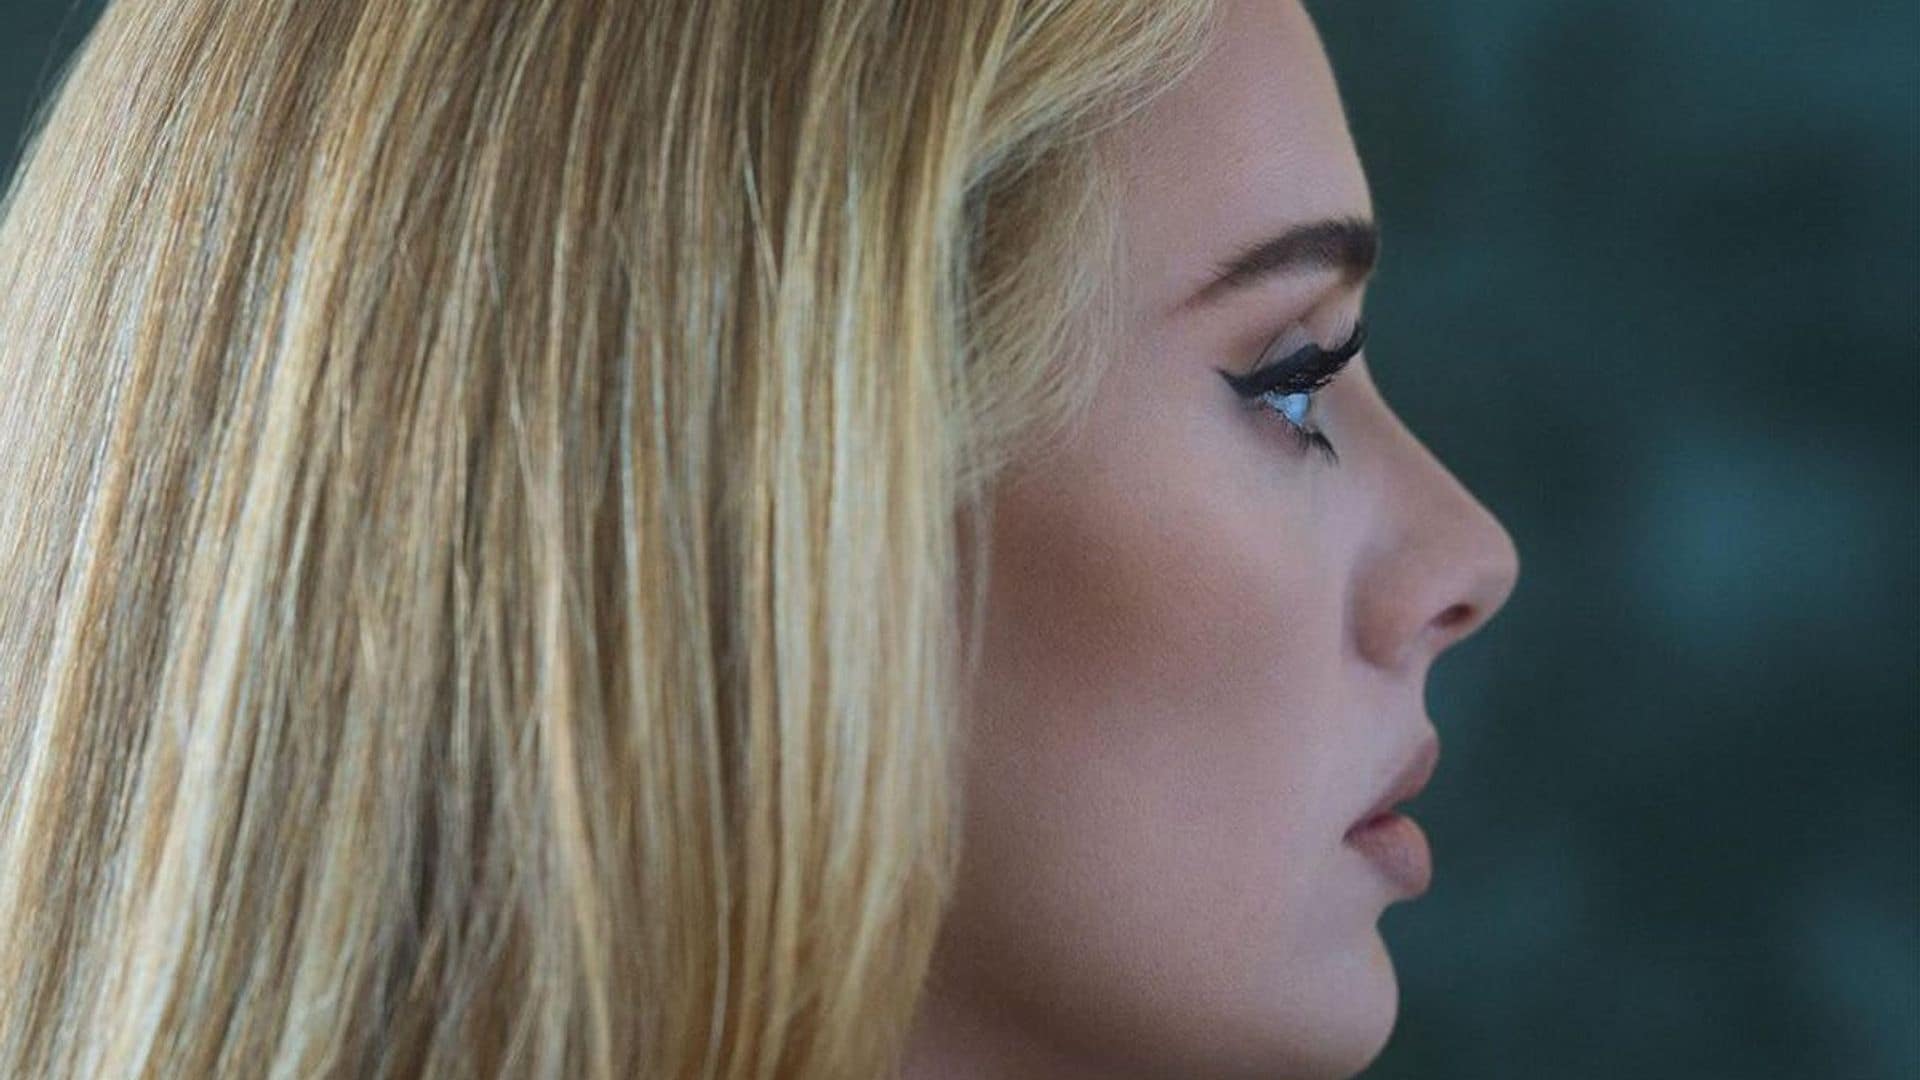 Adele announces '30' album release date